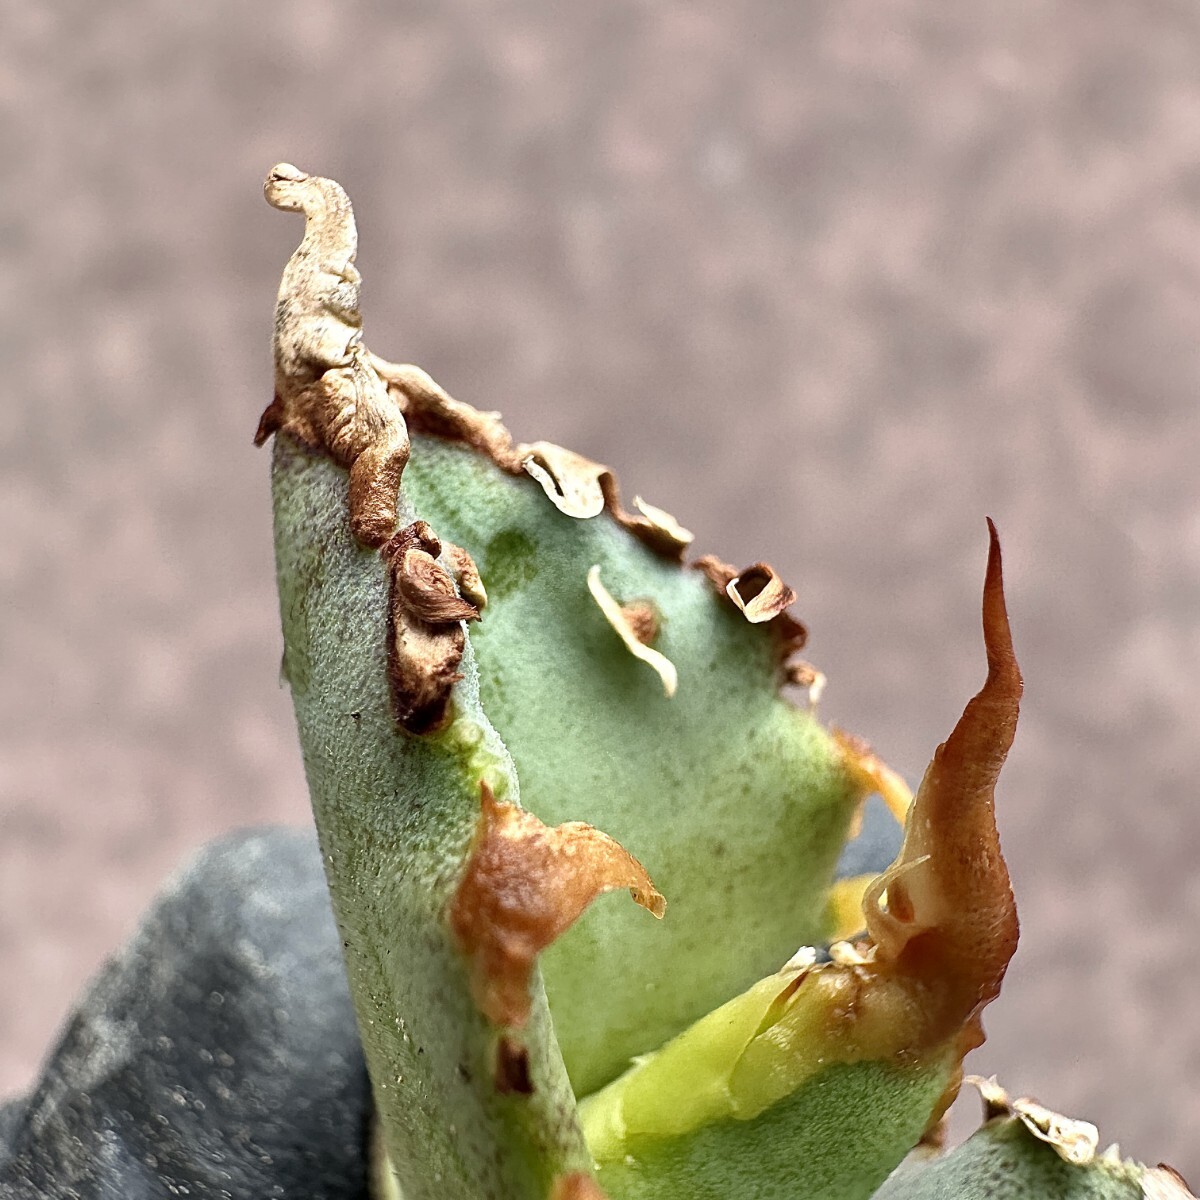 【Lj_plants】Z35 アガベ チタノタ ゴジラ GODZILLA 強狂刺 葉内刺し 胴切天芽 の画像7